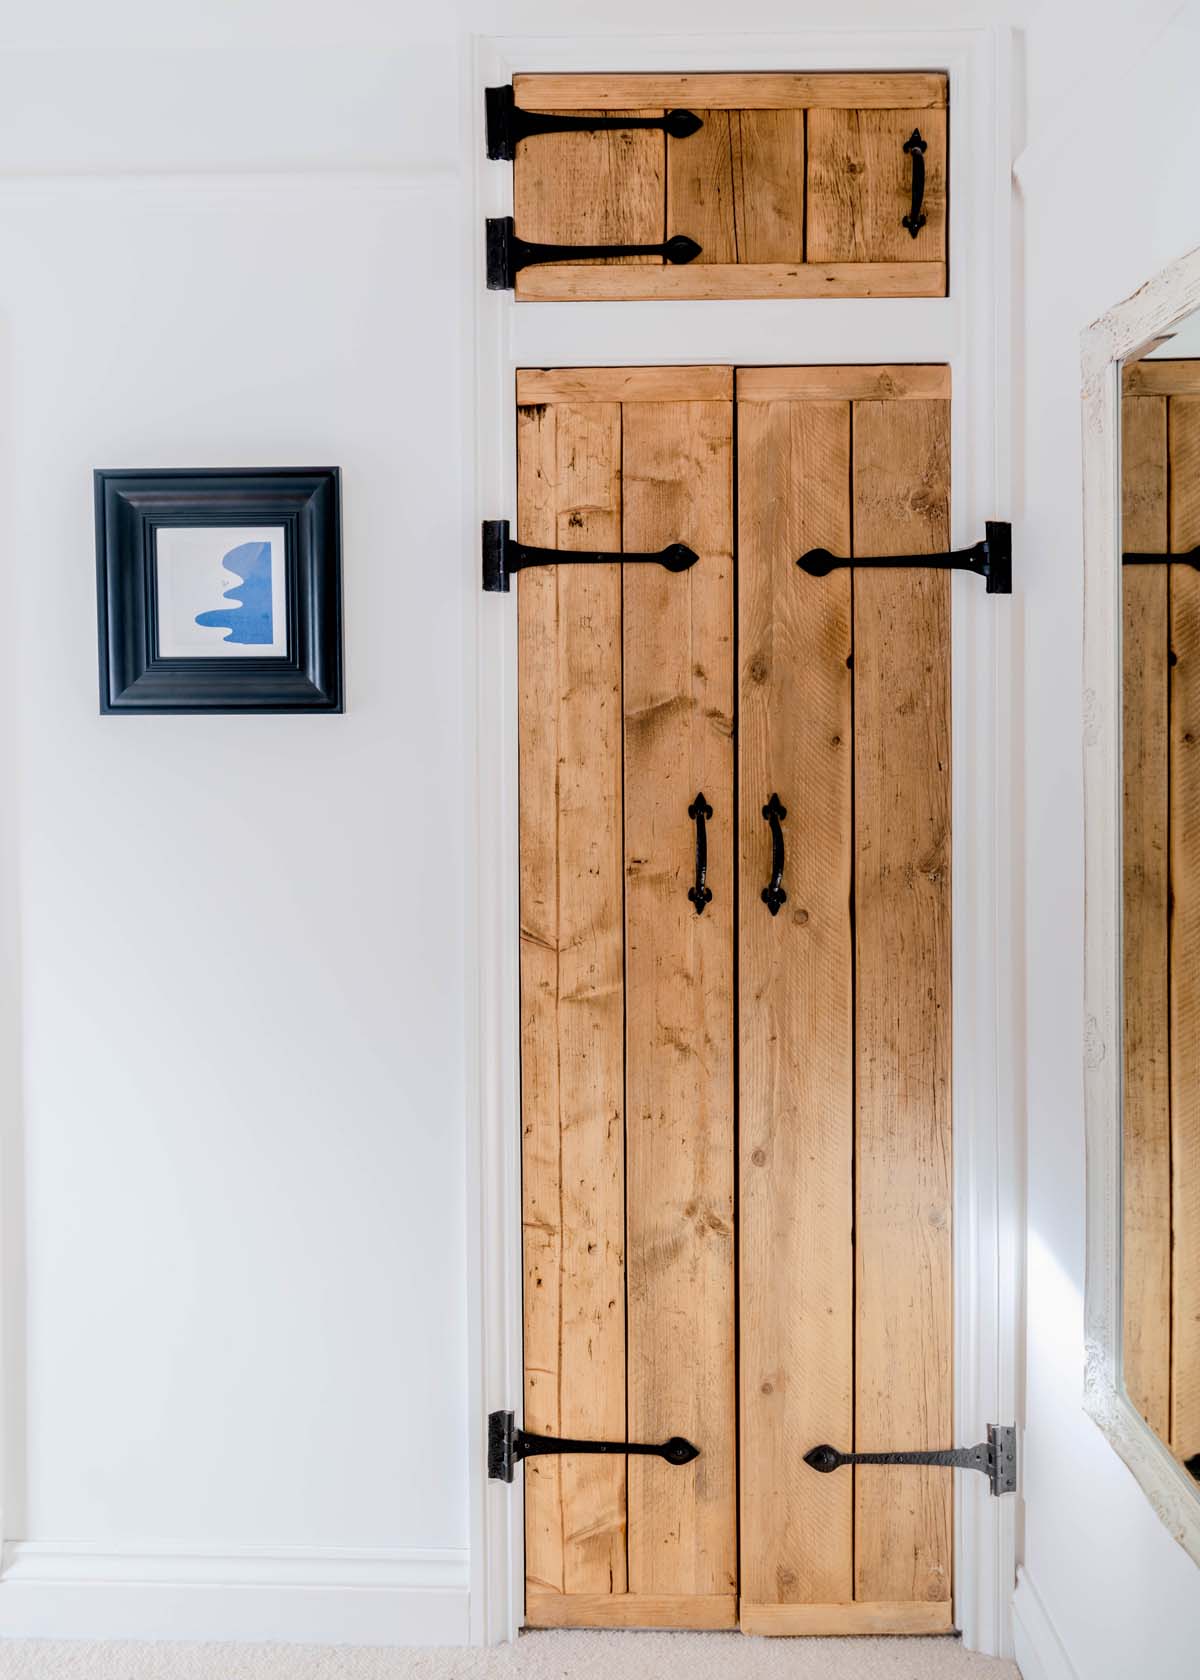 Wooden cupboard door with iron hinges